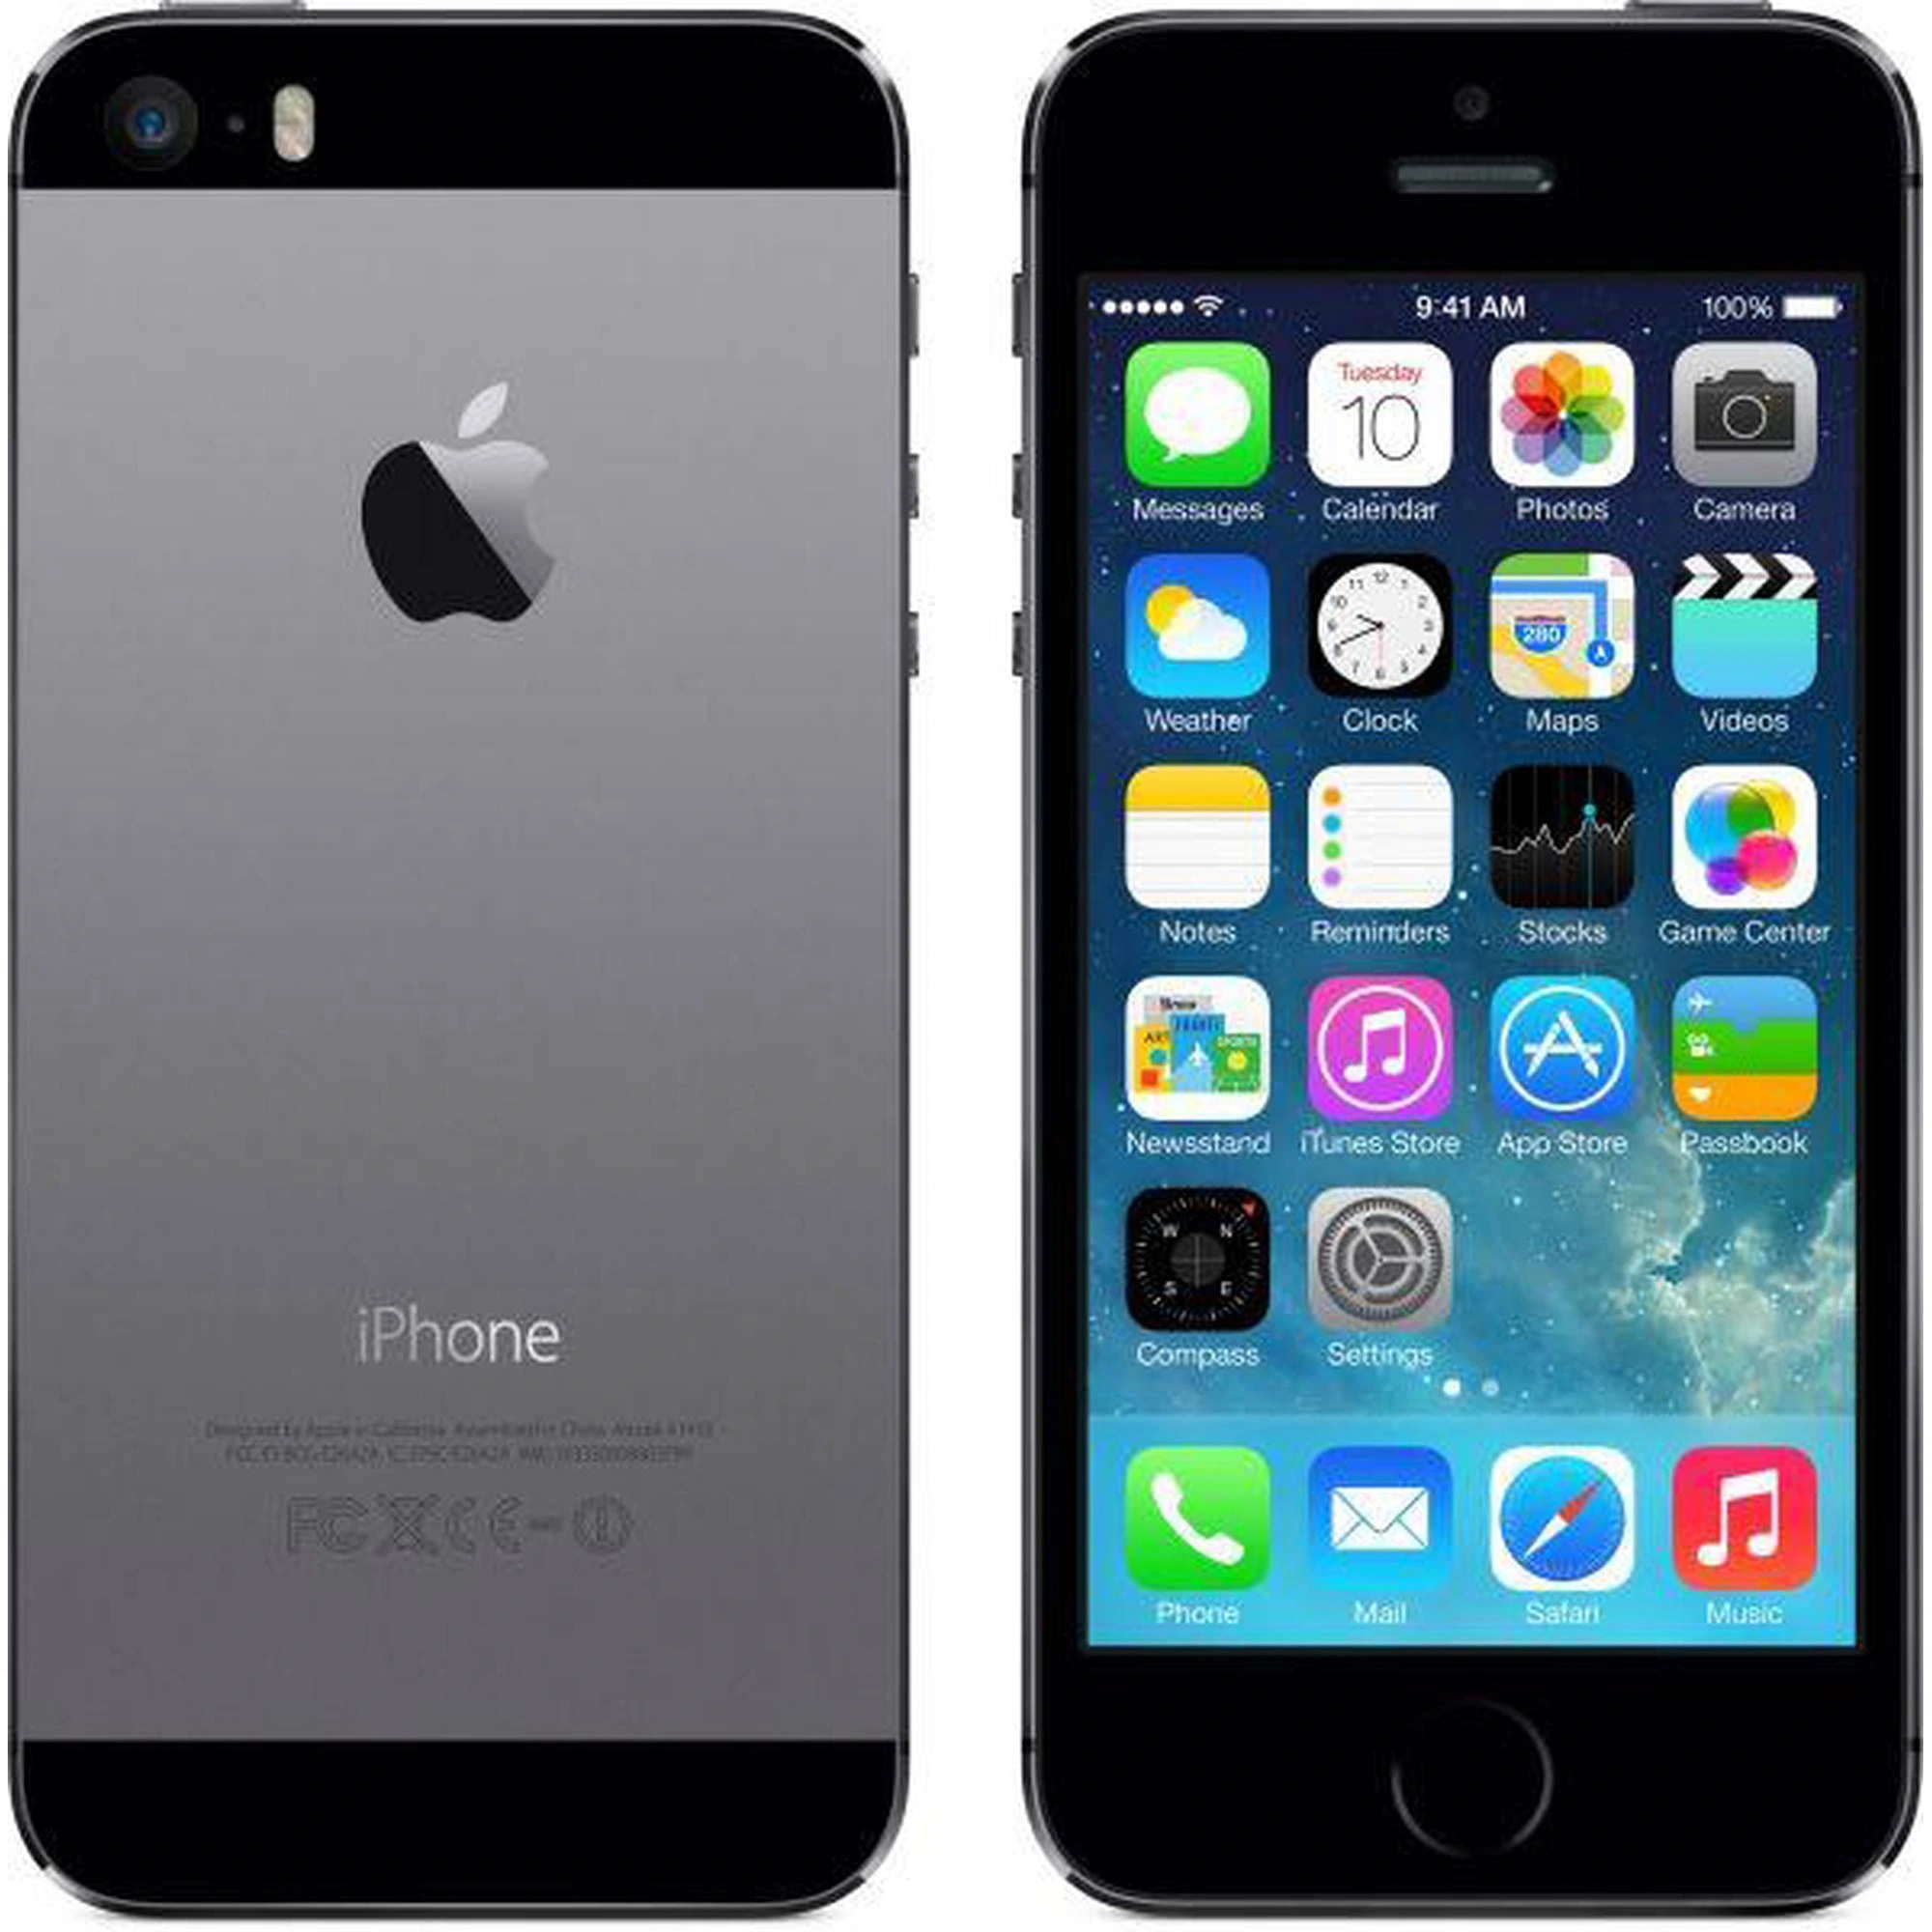 Apple iPhone 5s CDMA Specs